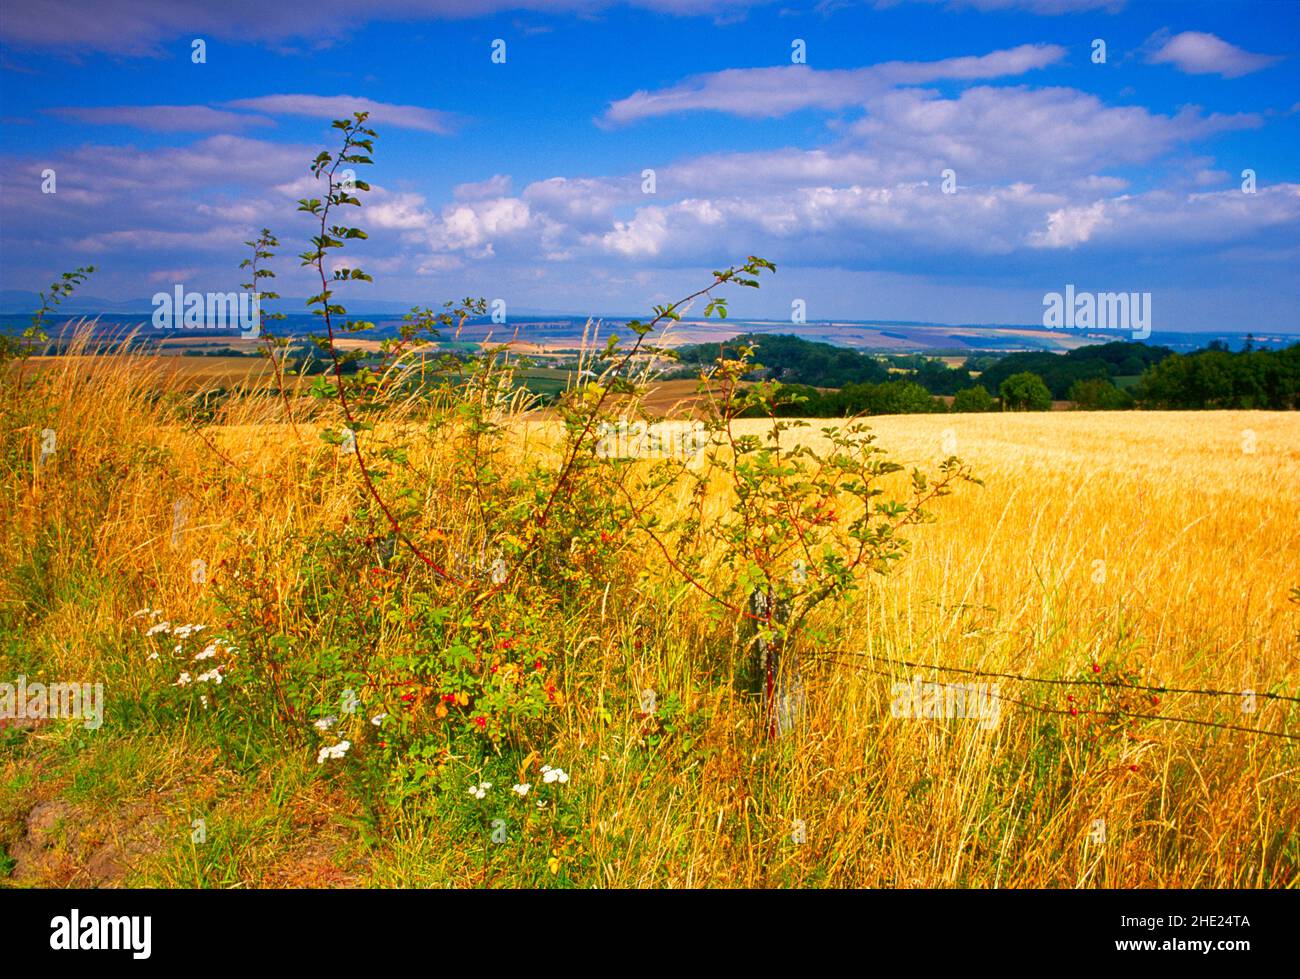 Scotland, Perthshire, landscape, Stock Photo